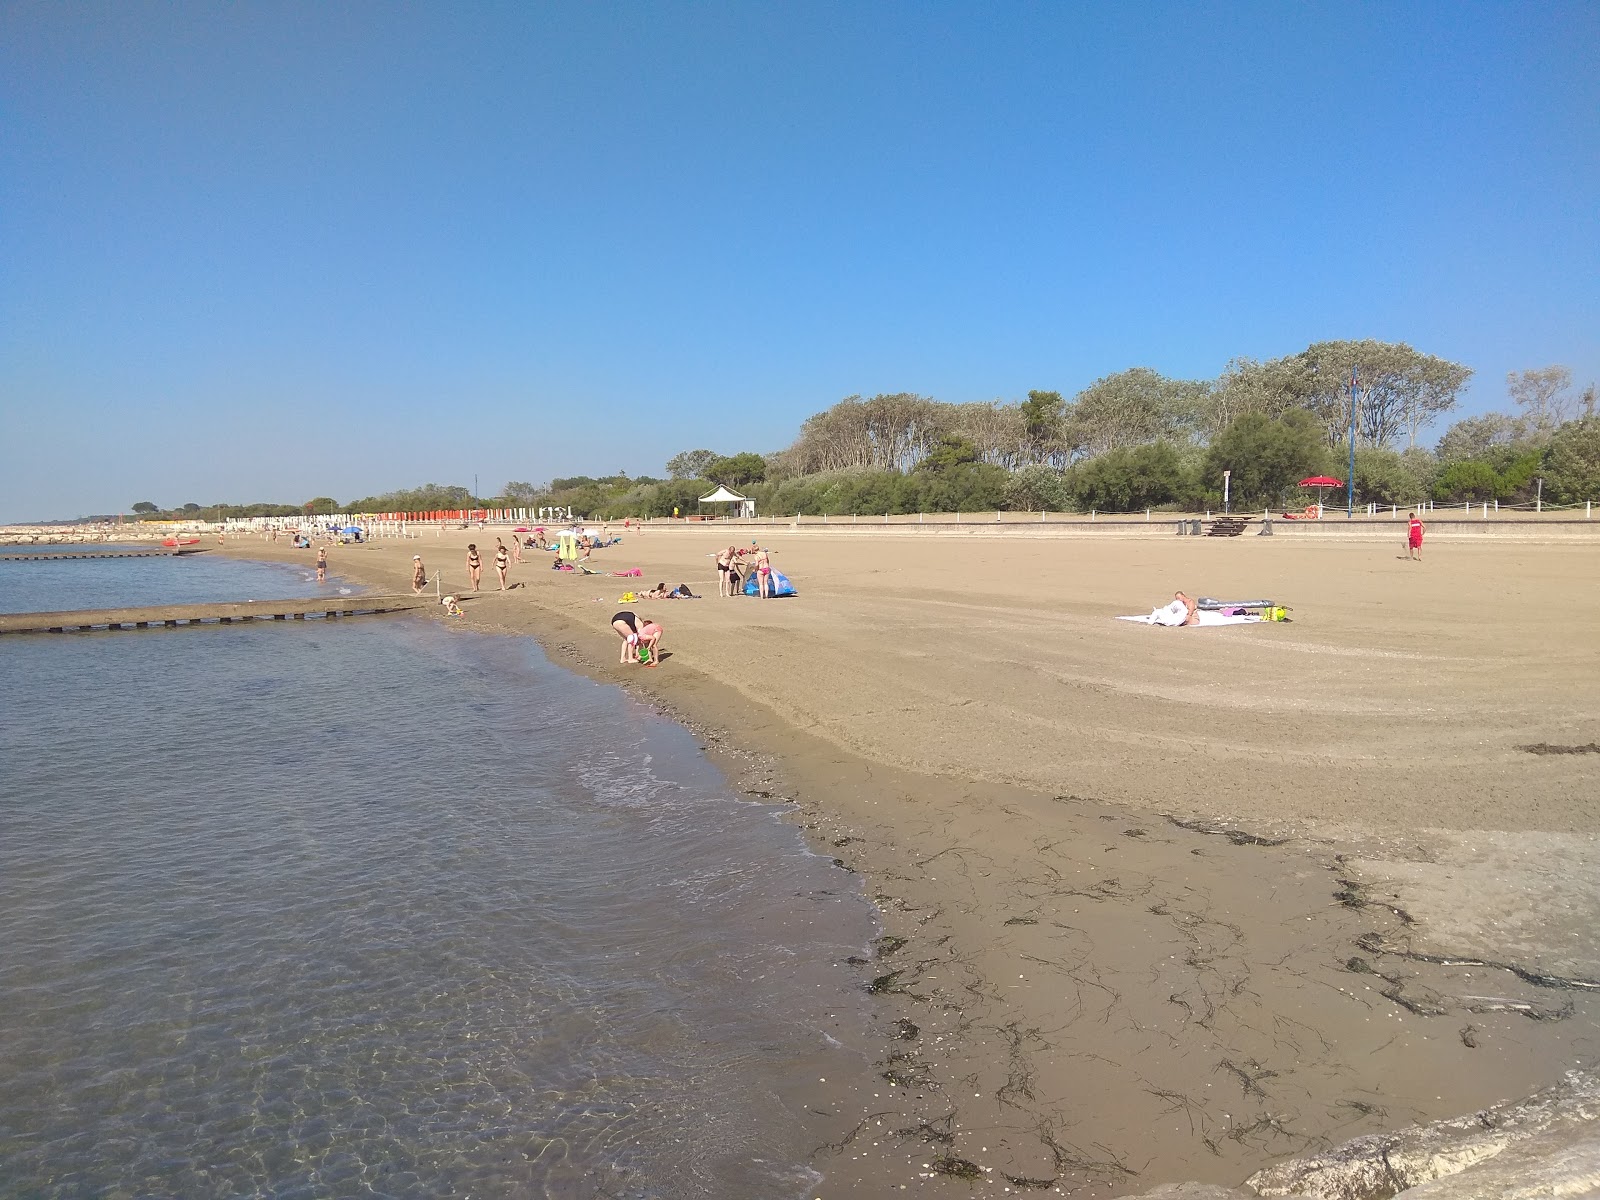 Zdjęcie Caorle beach z poziomem czystości wysoki